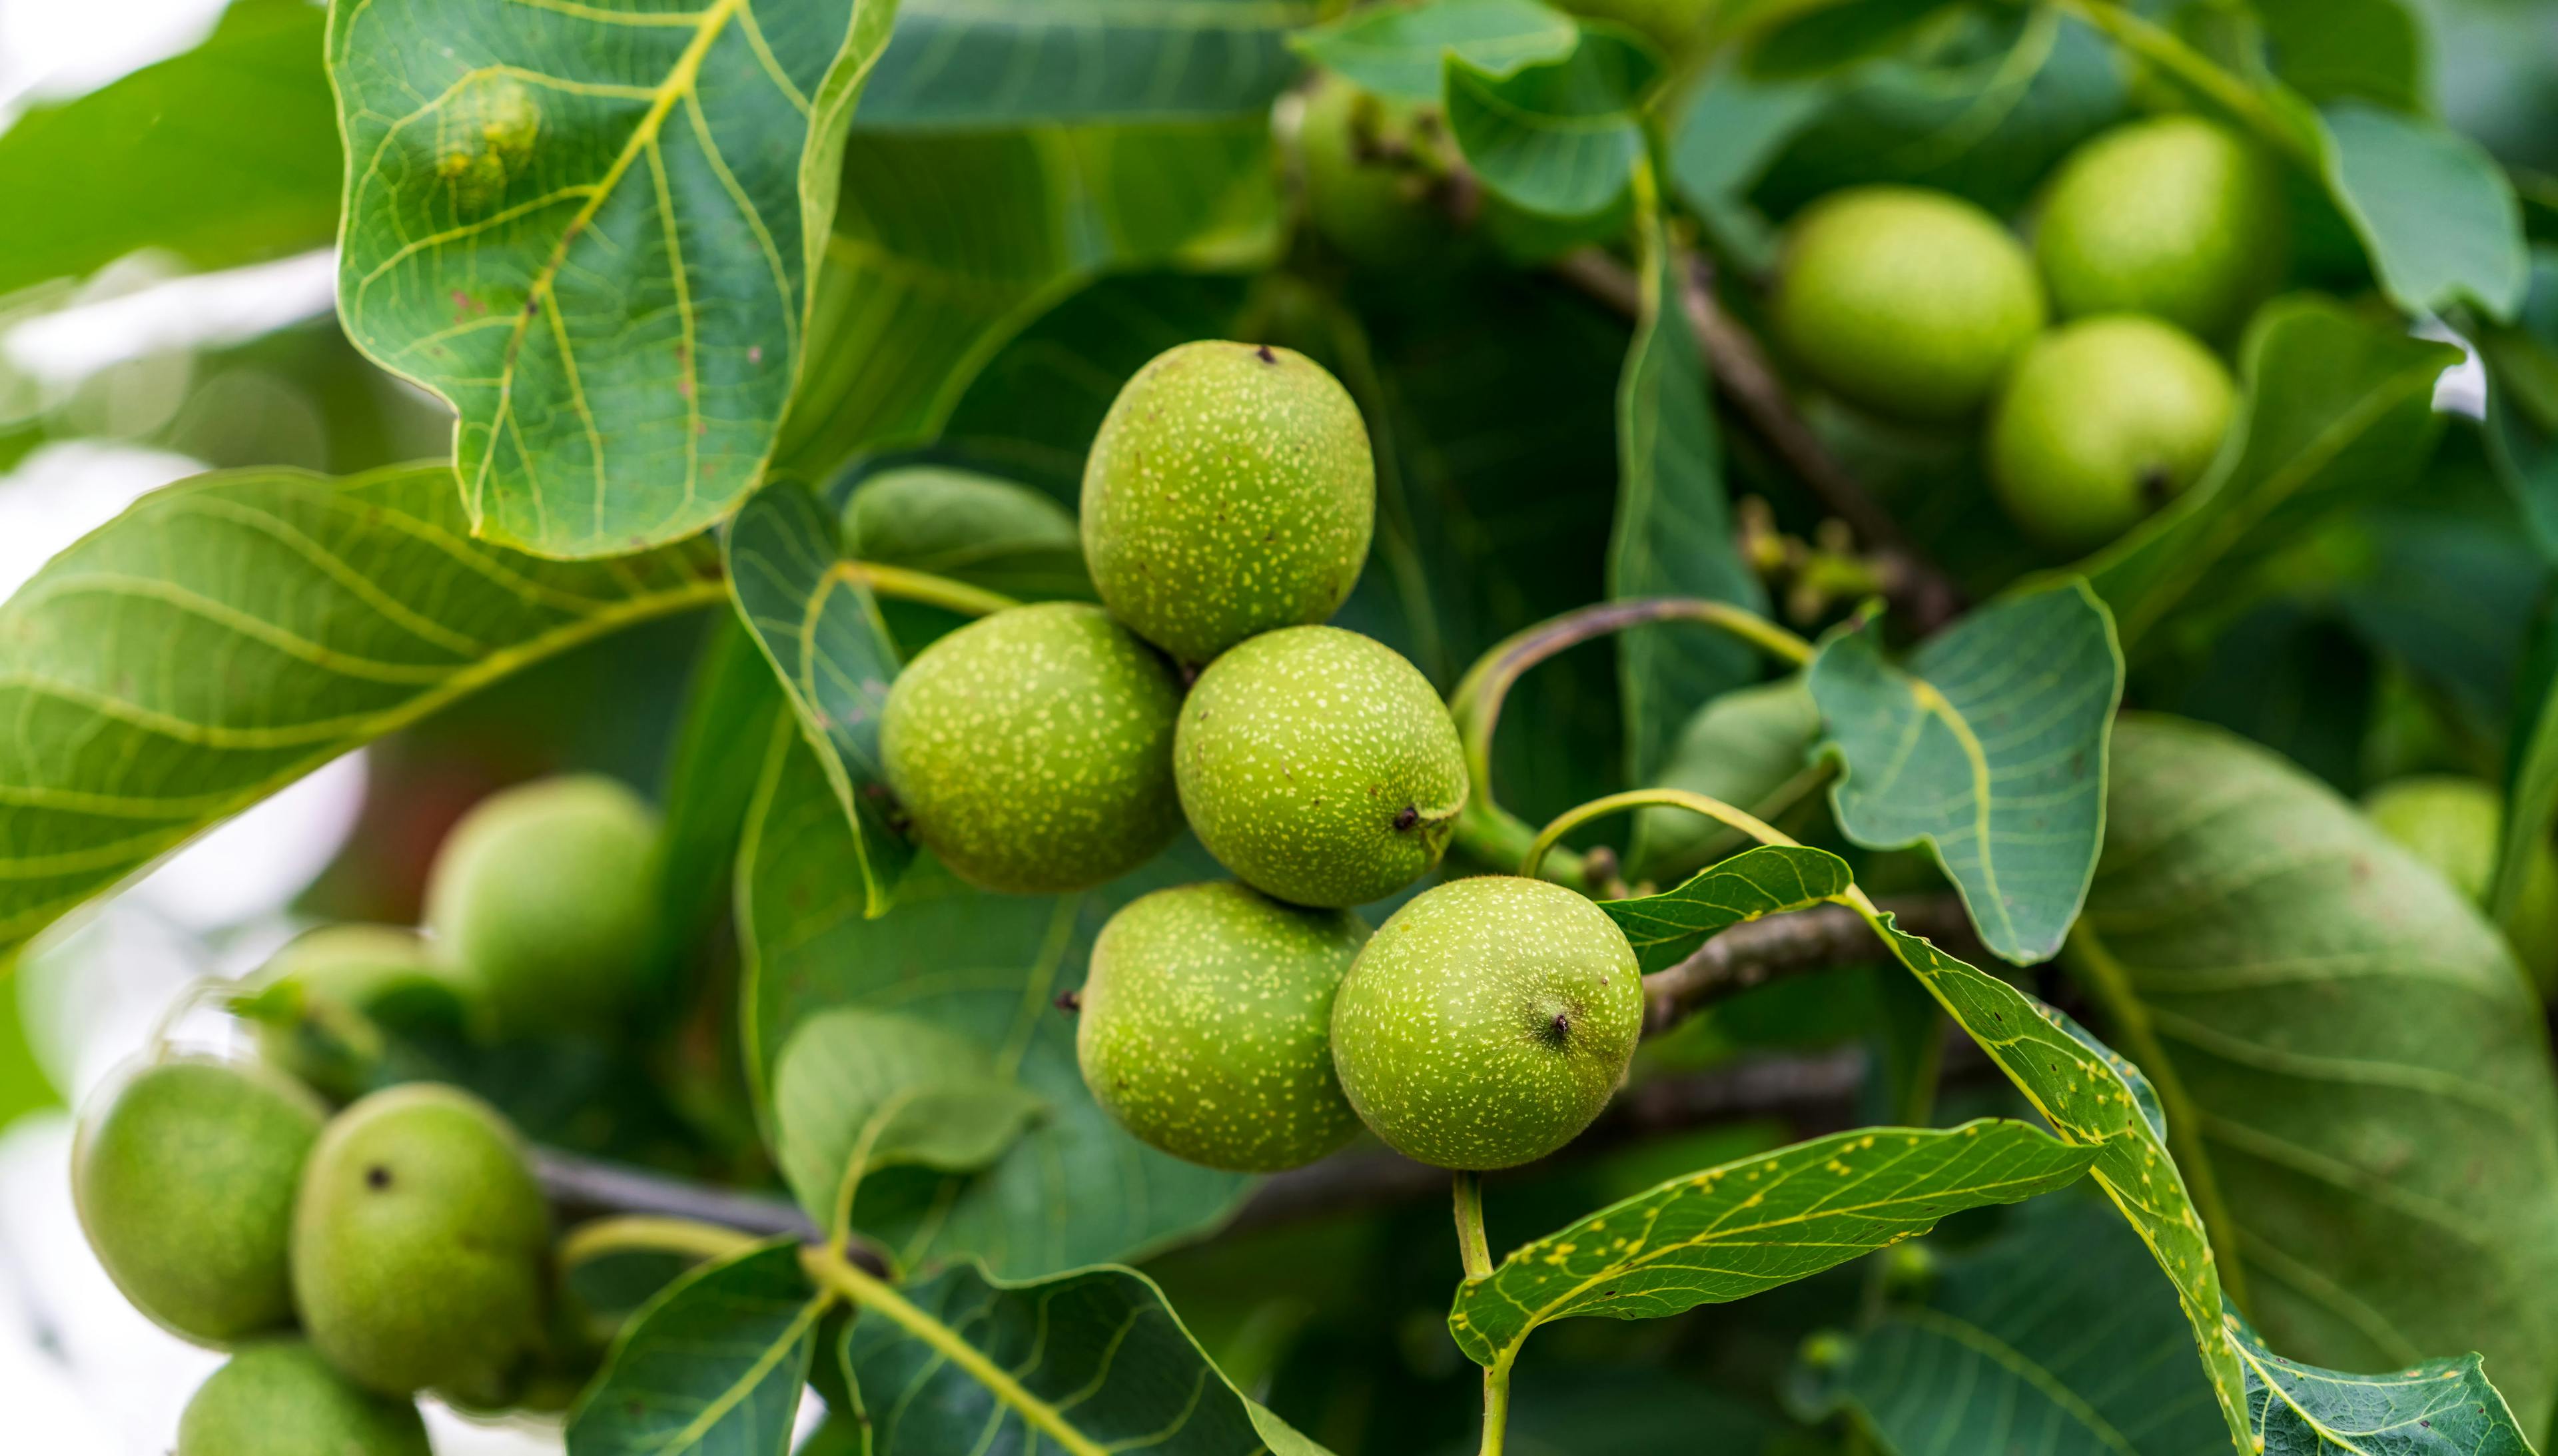 Summer tree garden of nut. Branch of green walnuts. | Image Credit: © Vadim - stock.adobe.com